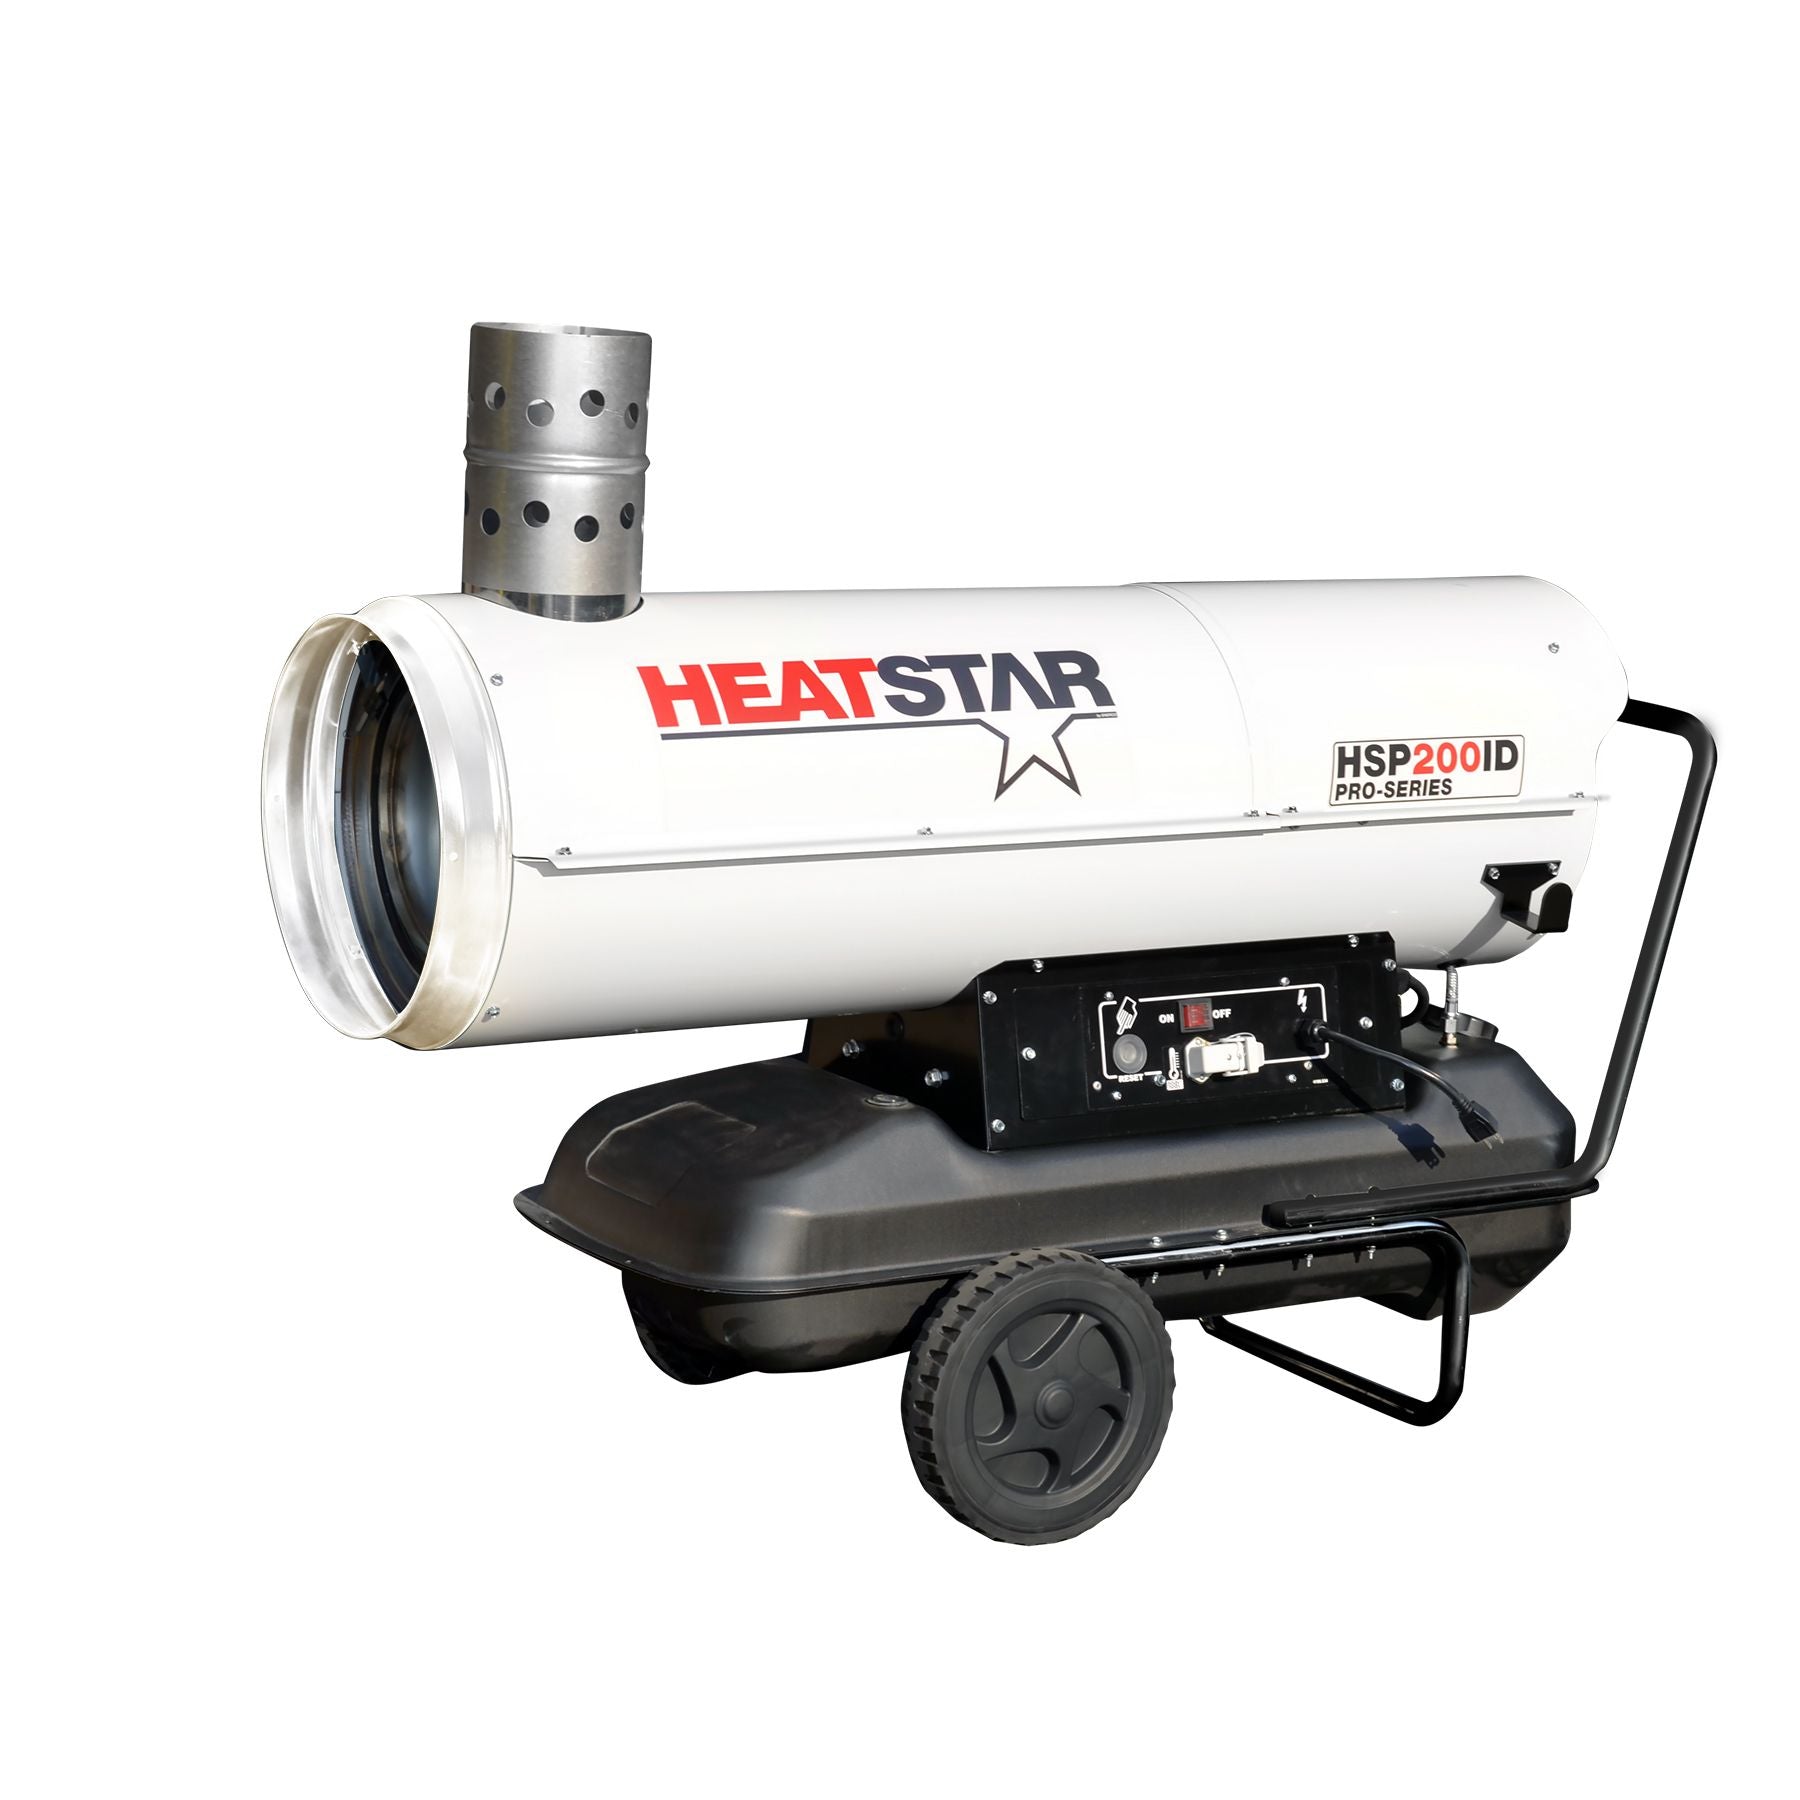 Heatstar Pro-Series Diesel/Oil Indirect Fired Heater - 180,000 BTU/HR